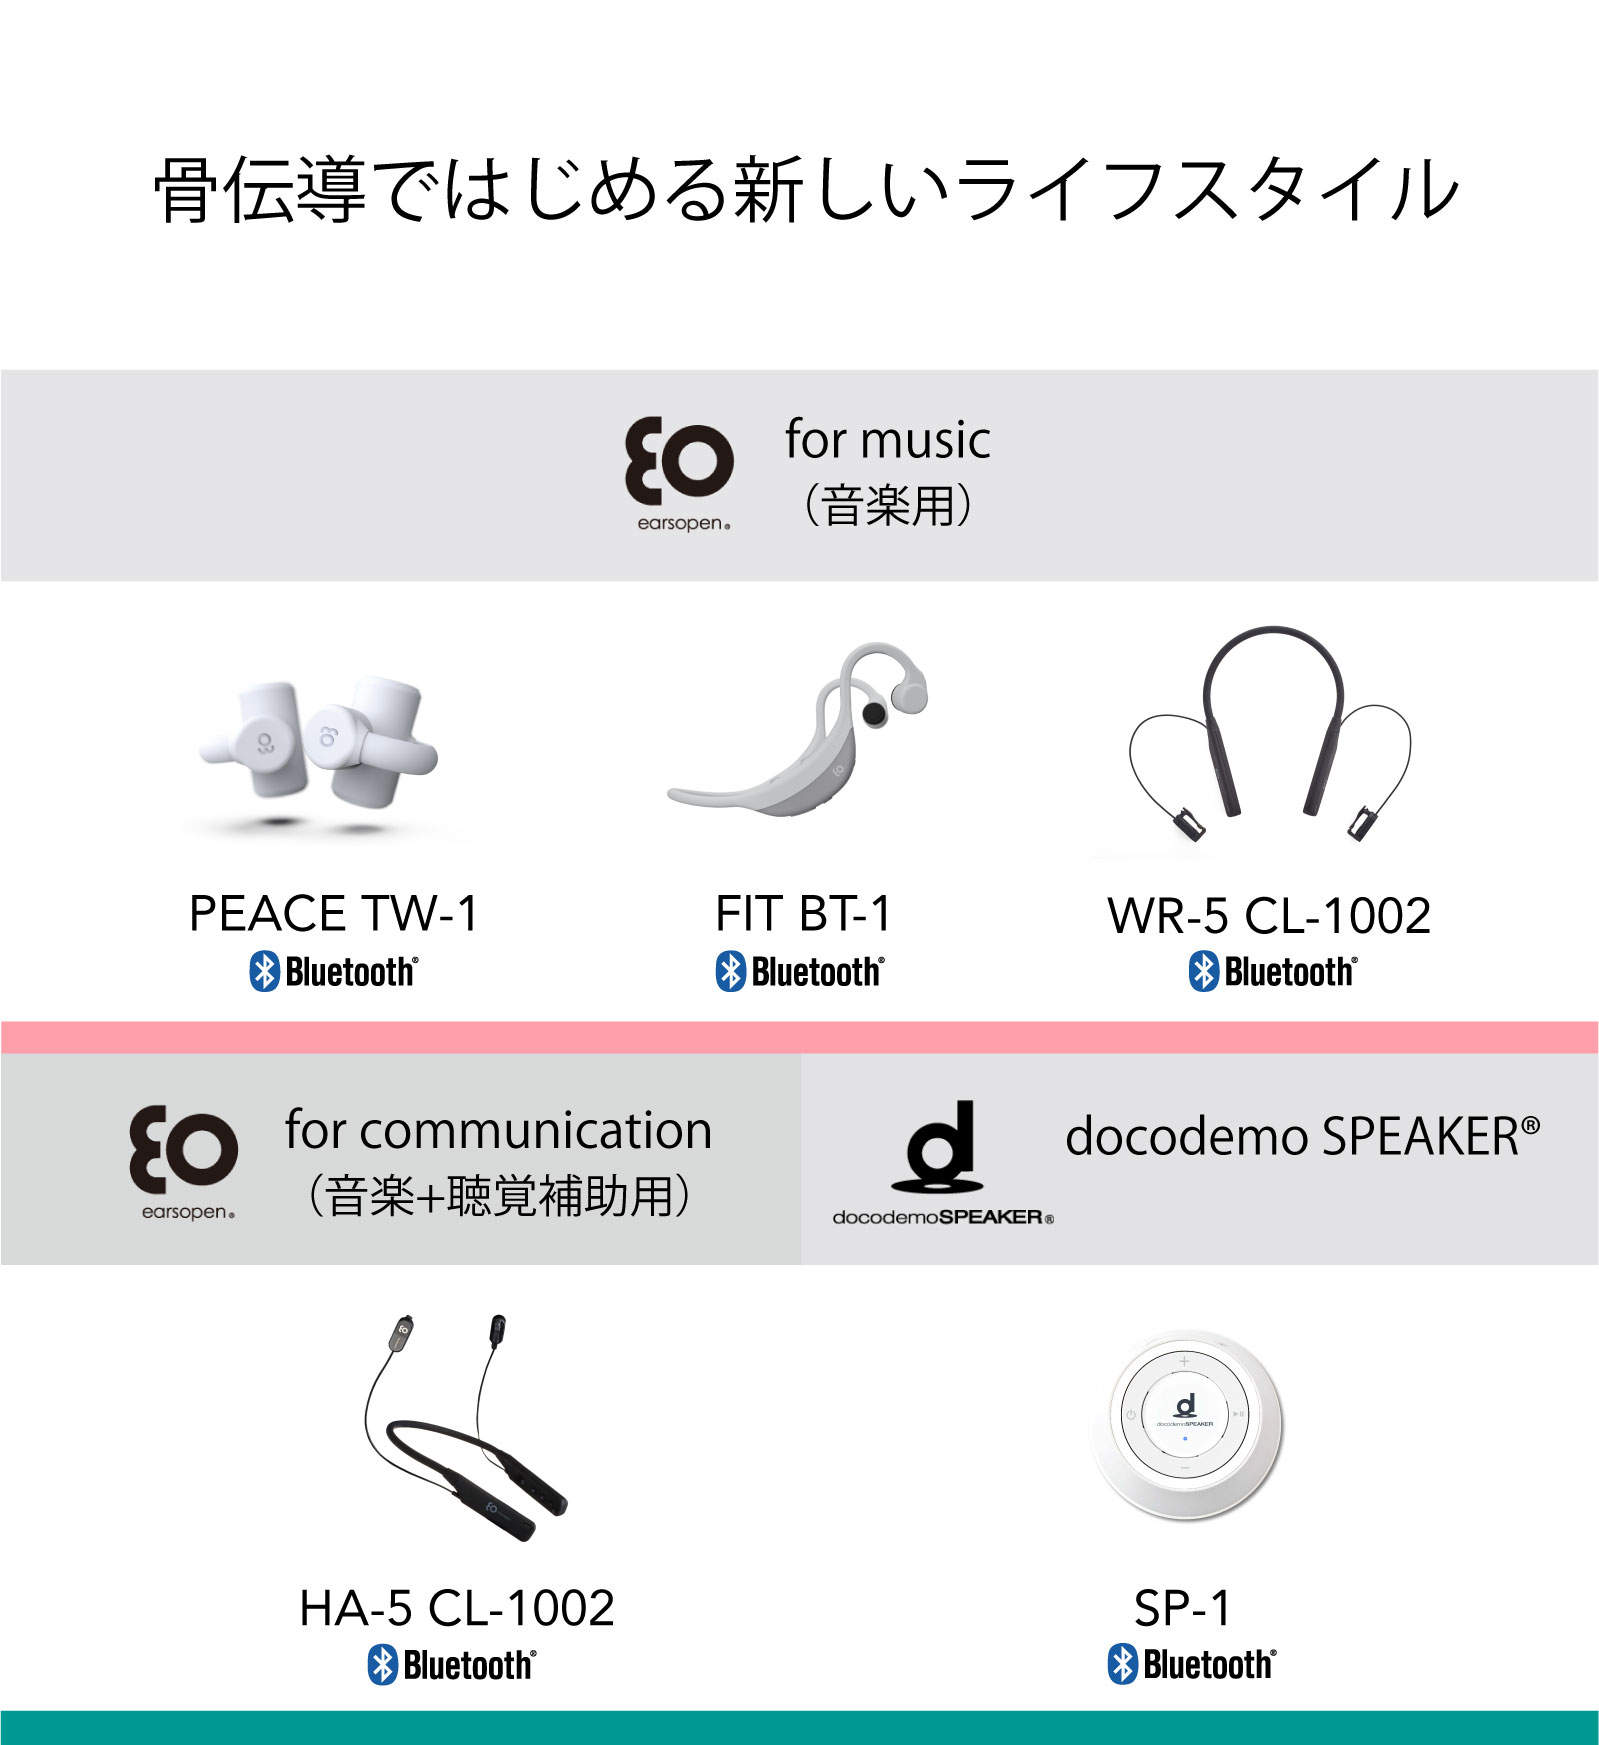 HA-3 CL-1001-B(ブラック) Earsopen For Music Amp; Communic イヤホン、ヘッドホン 